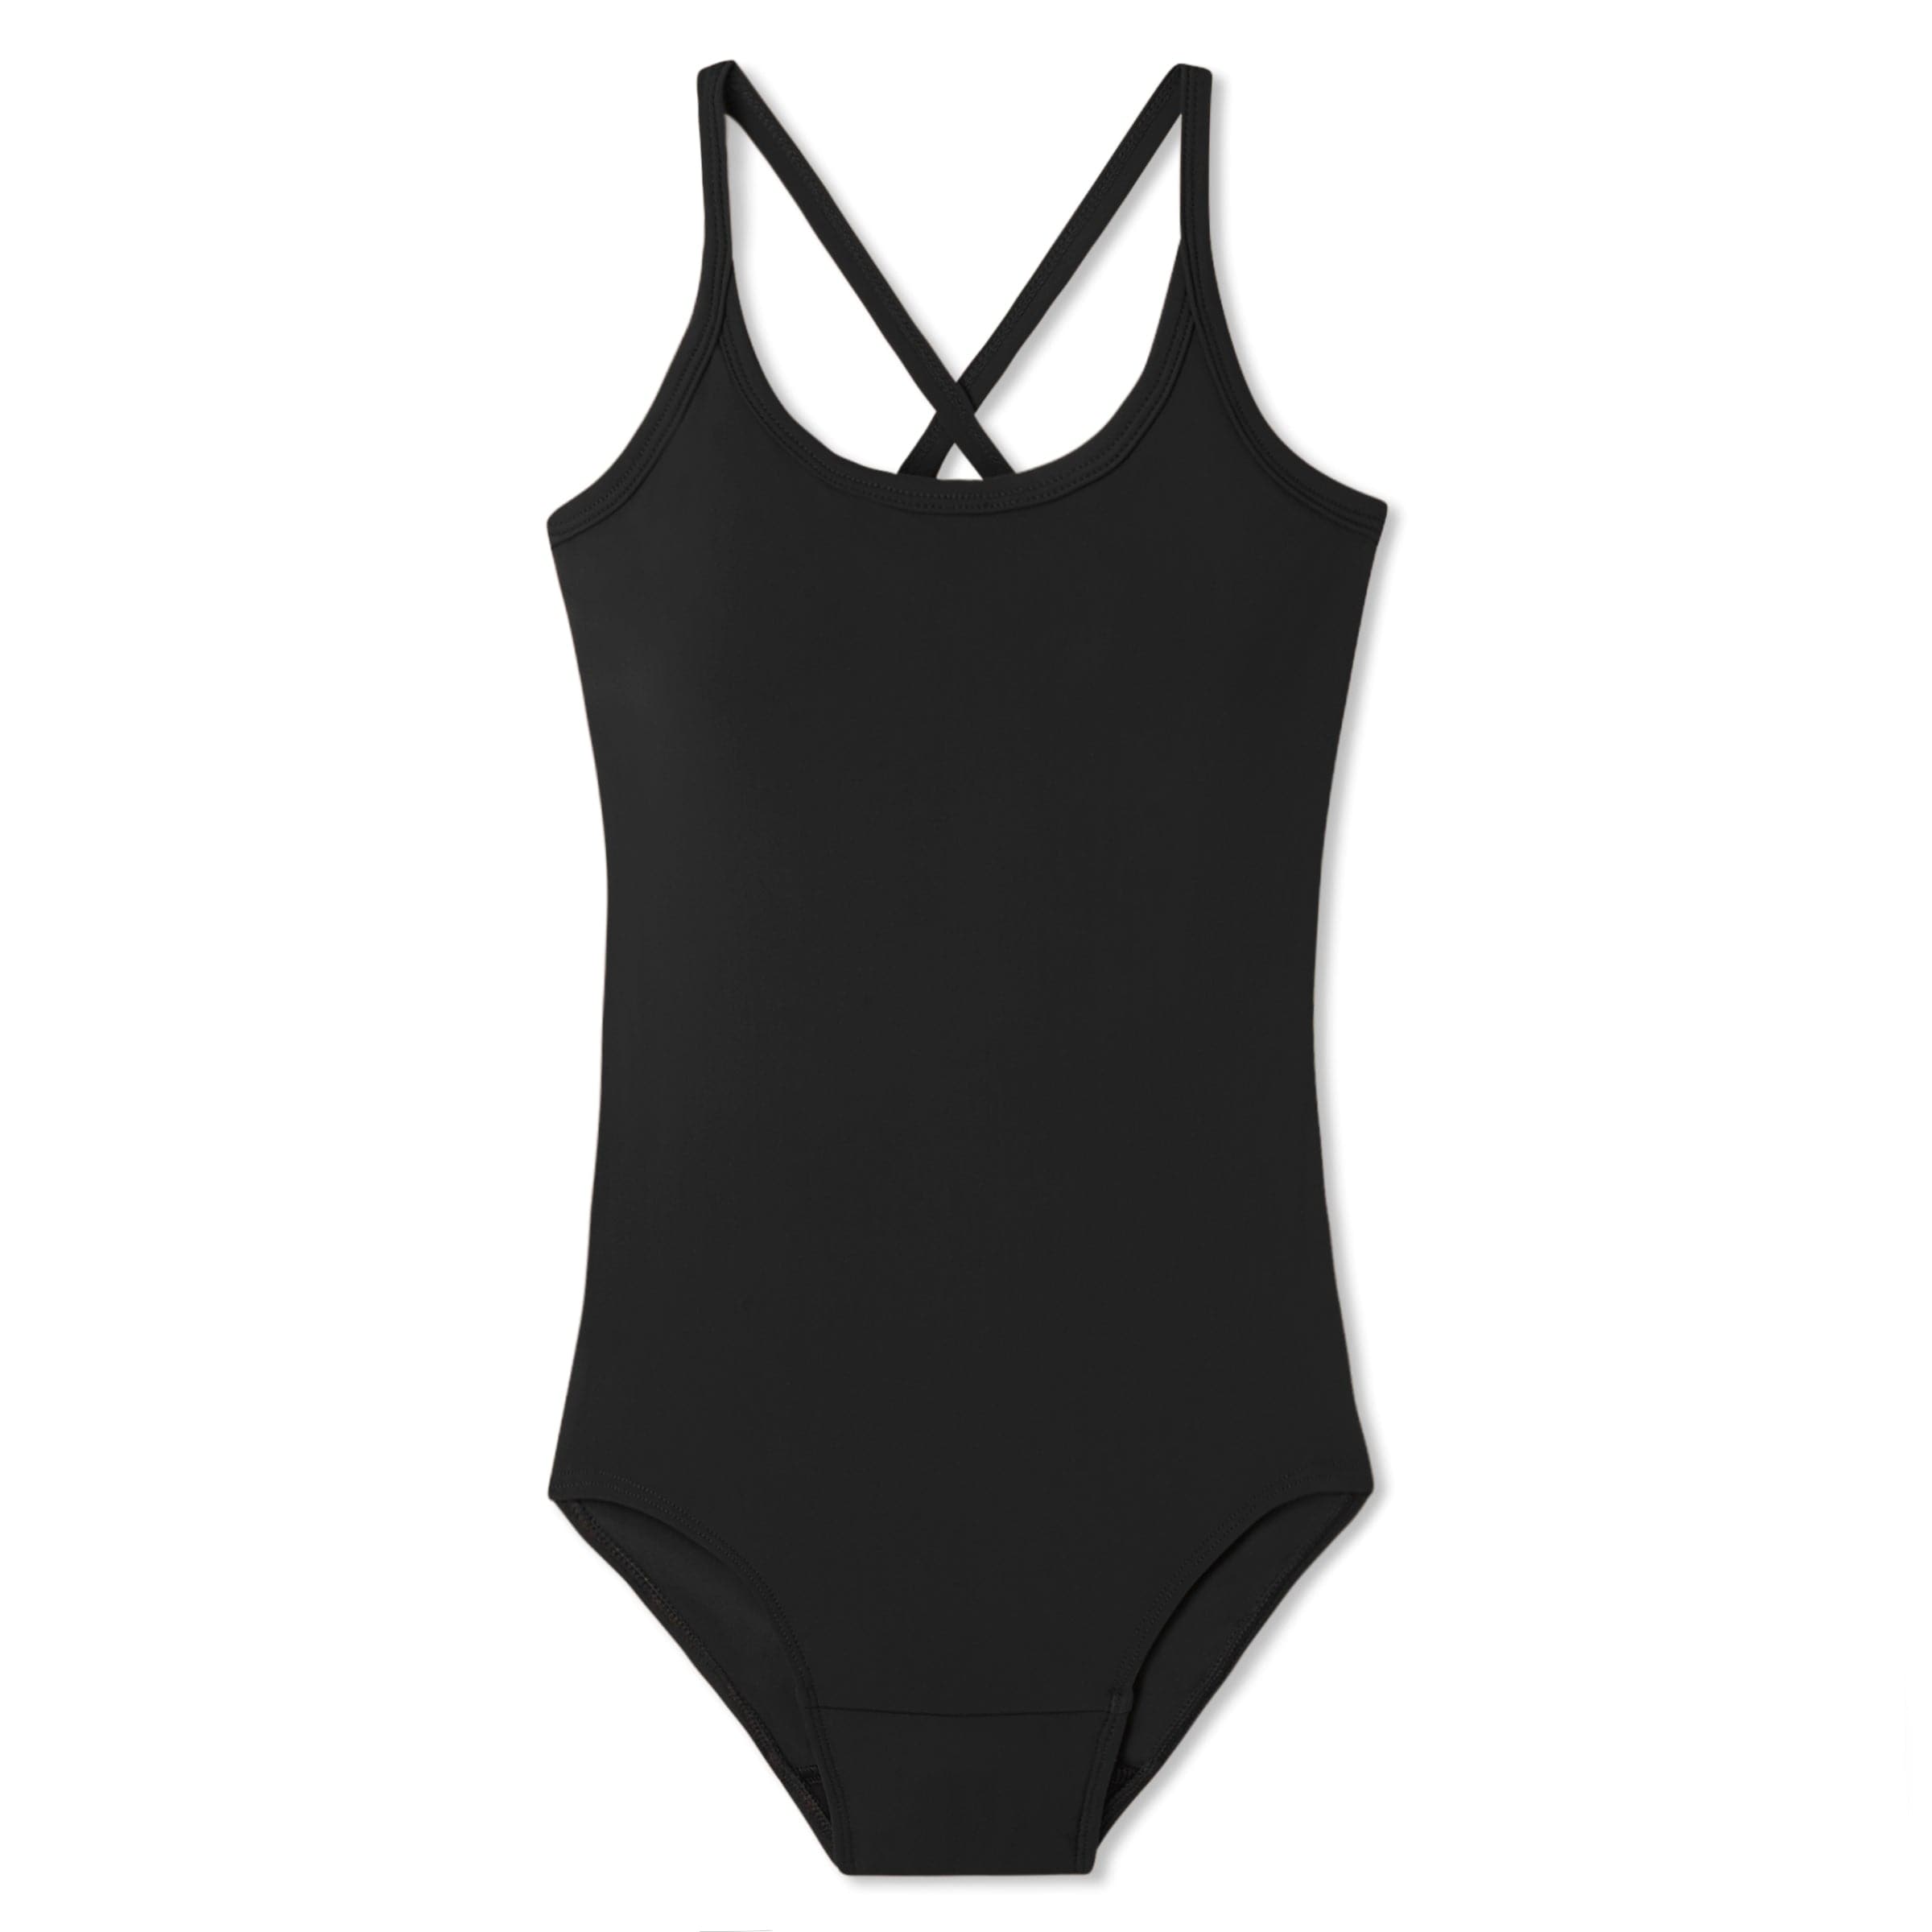 Luiyenes one piece swimsuit women period swimwear for teens